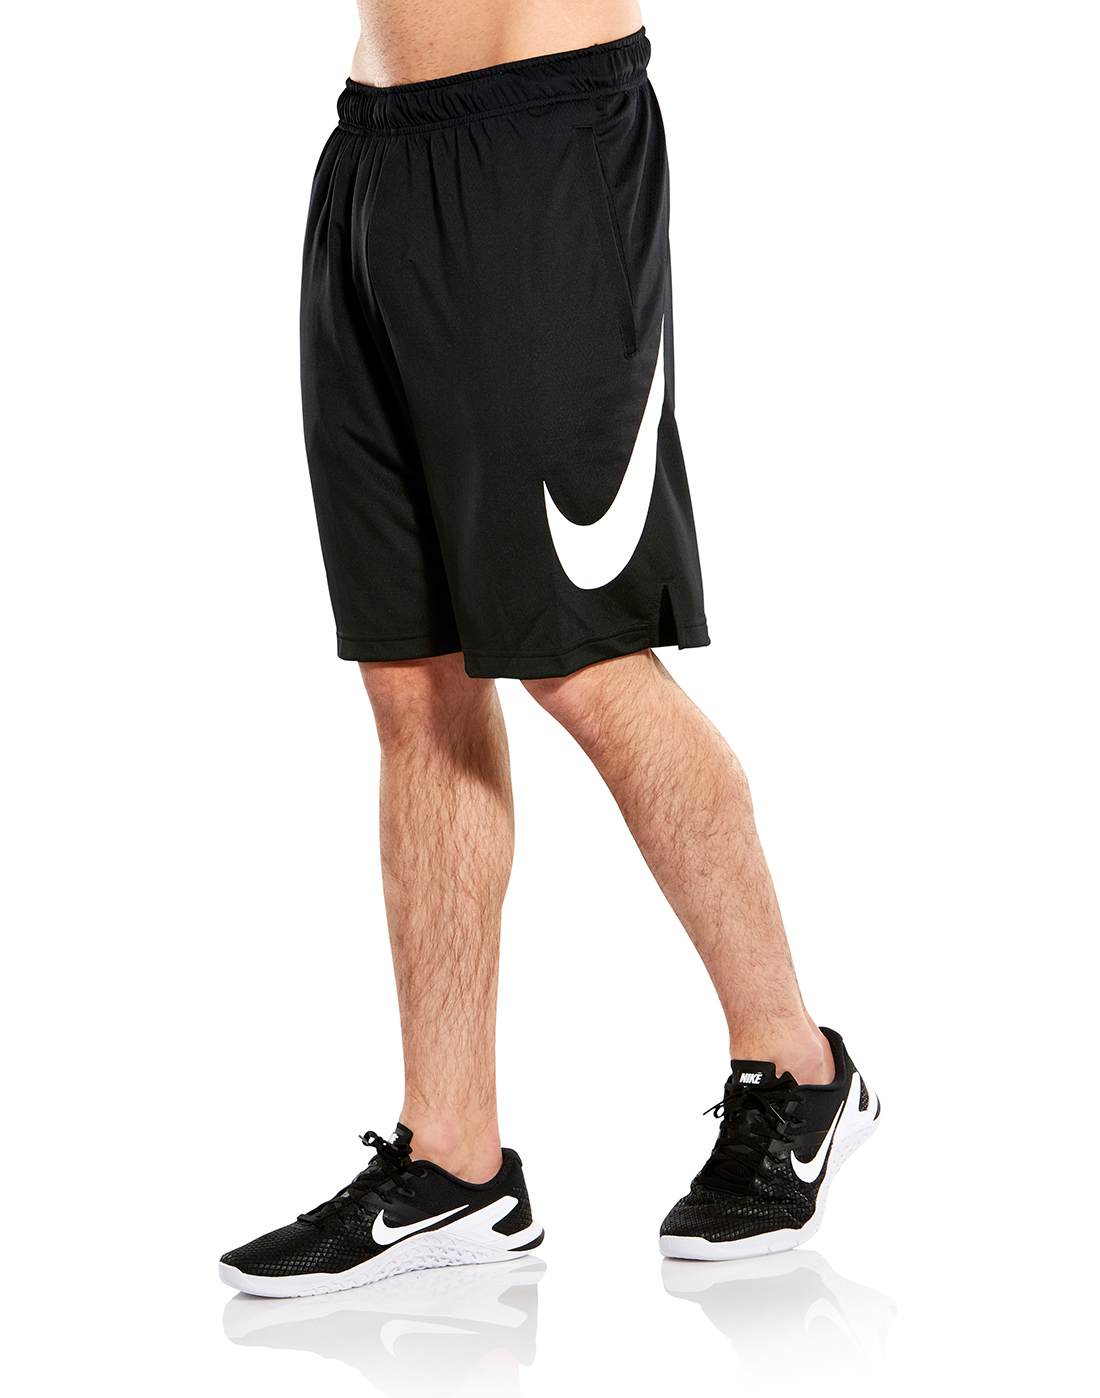 Nike Mens Shorts 4.0 Black | Style Sports EU